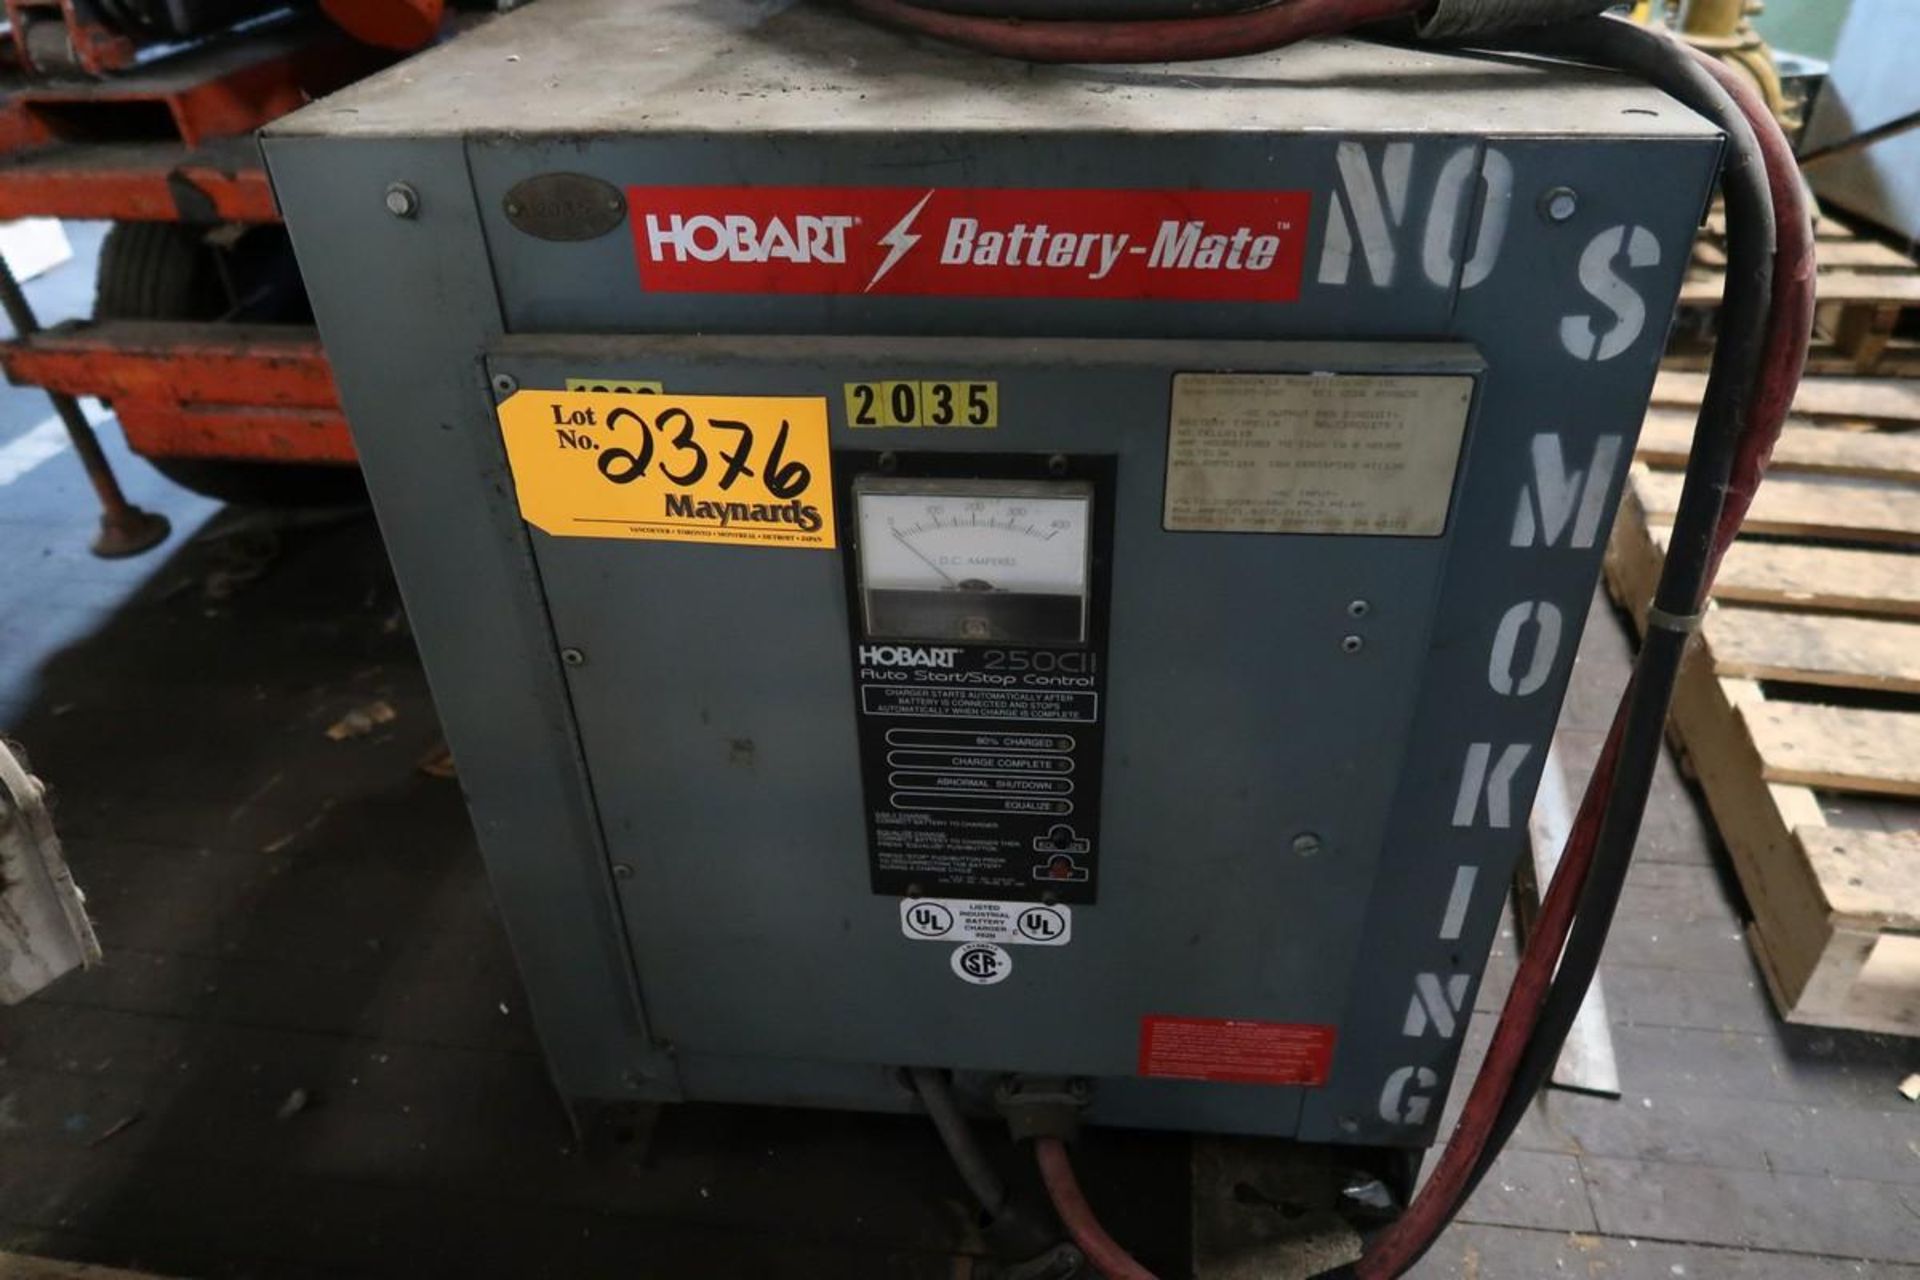 Hobart 1260H3-18C 36V Battery Charger - Image 2 of 3